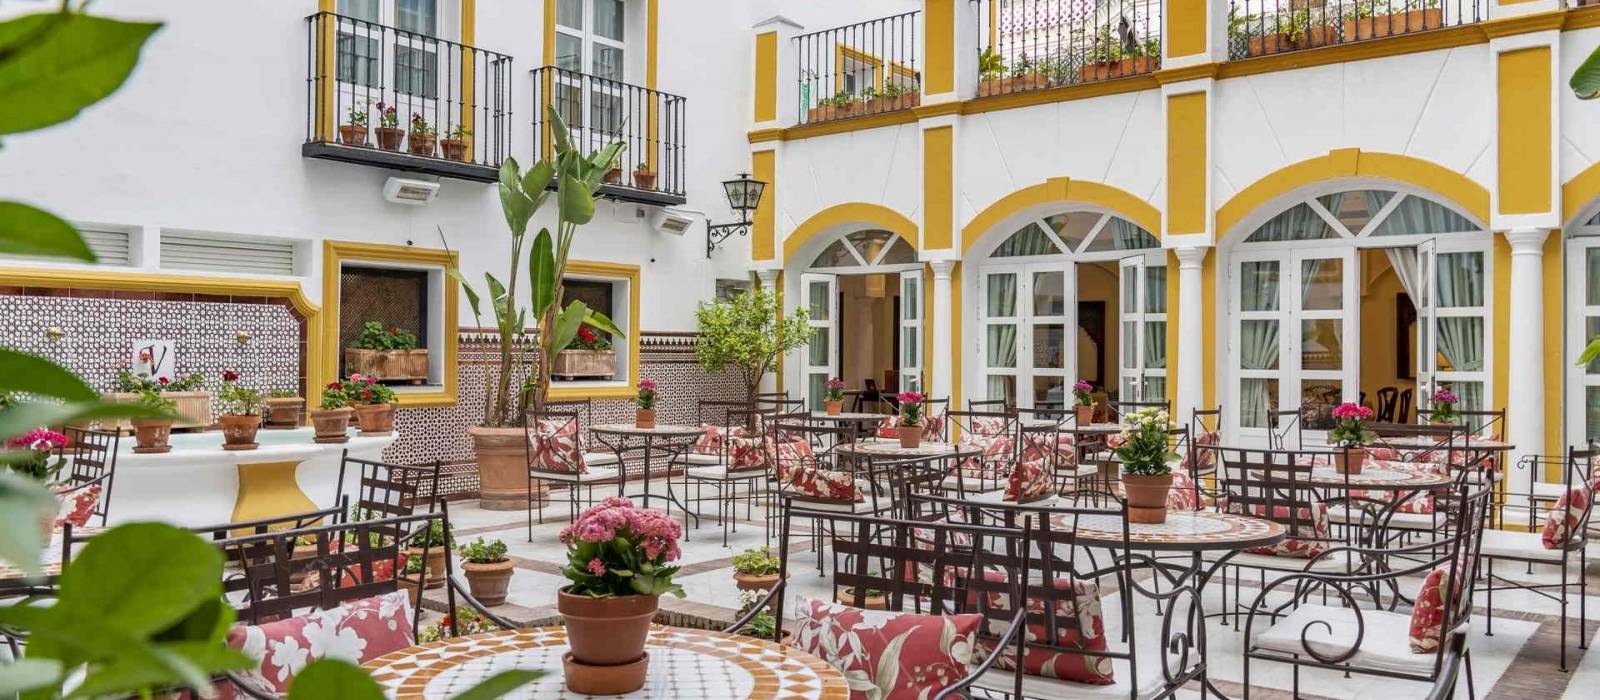 Servizi Hotel Sevilla La Rabida - Vincci Hoteles - Il Patio Andaluz